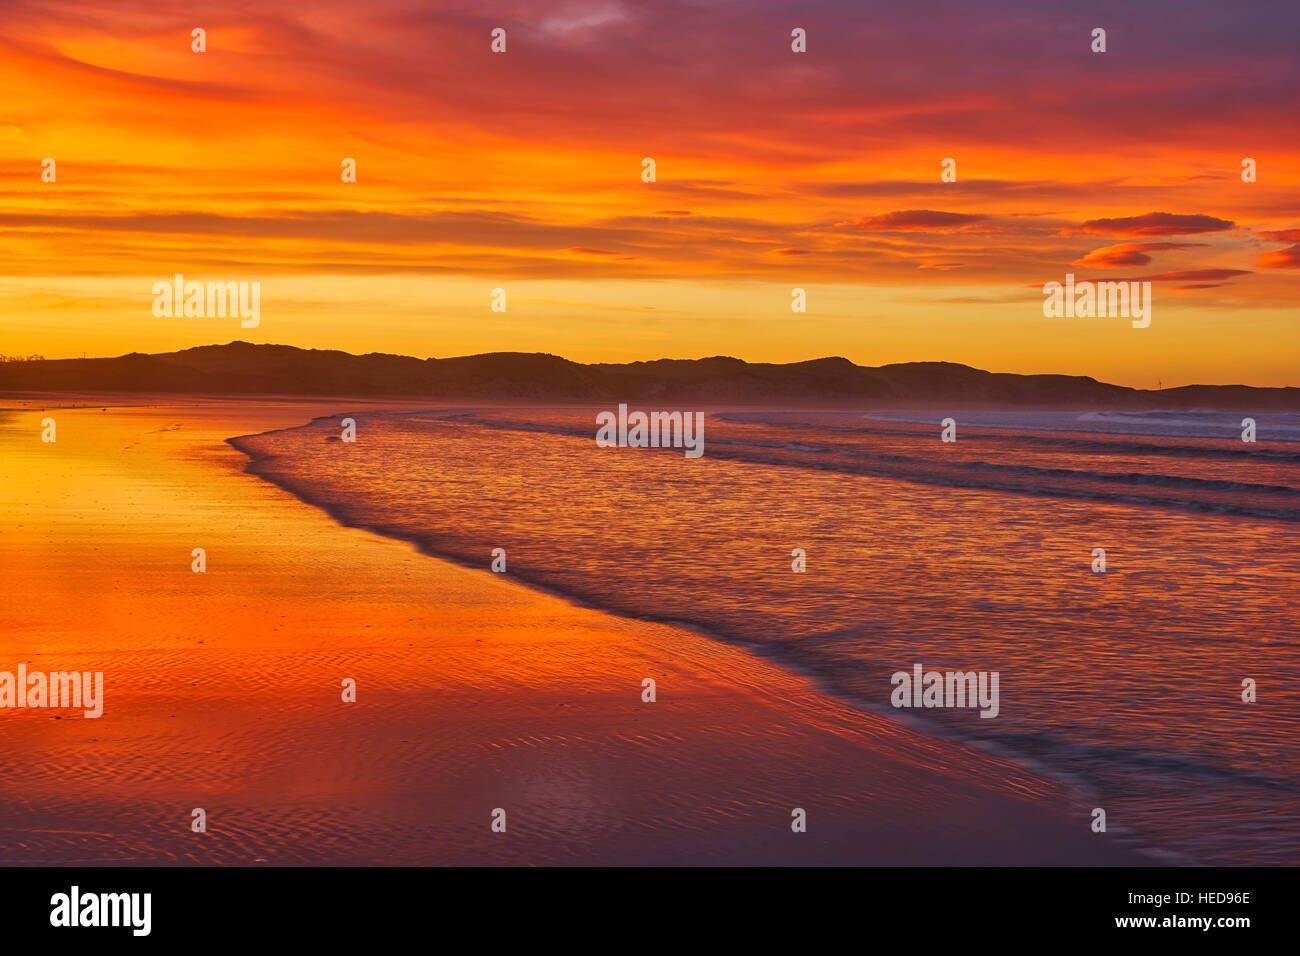 Sunrise over Dunnet Bay beach, Caithness, Scotland Stock Photo